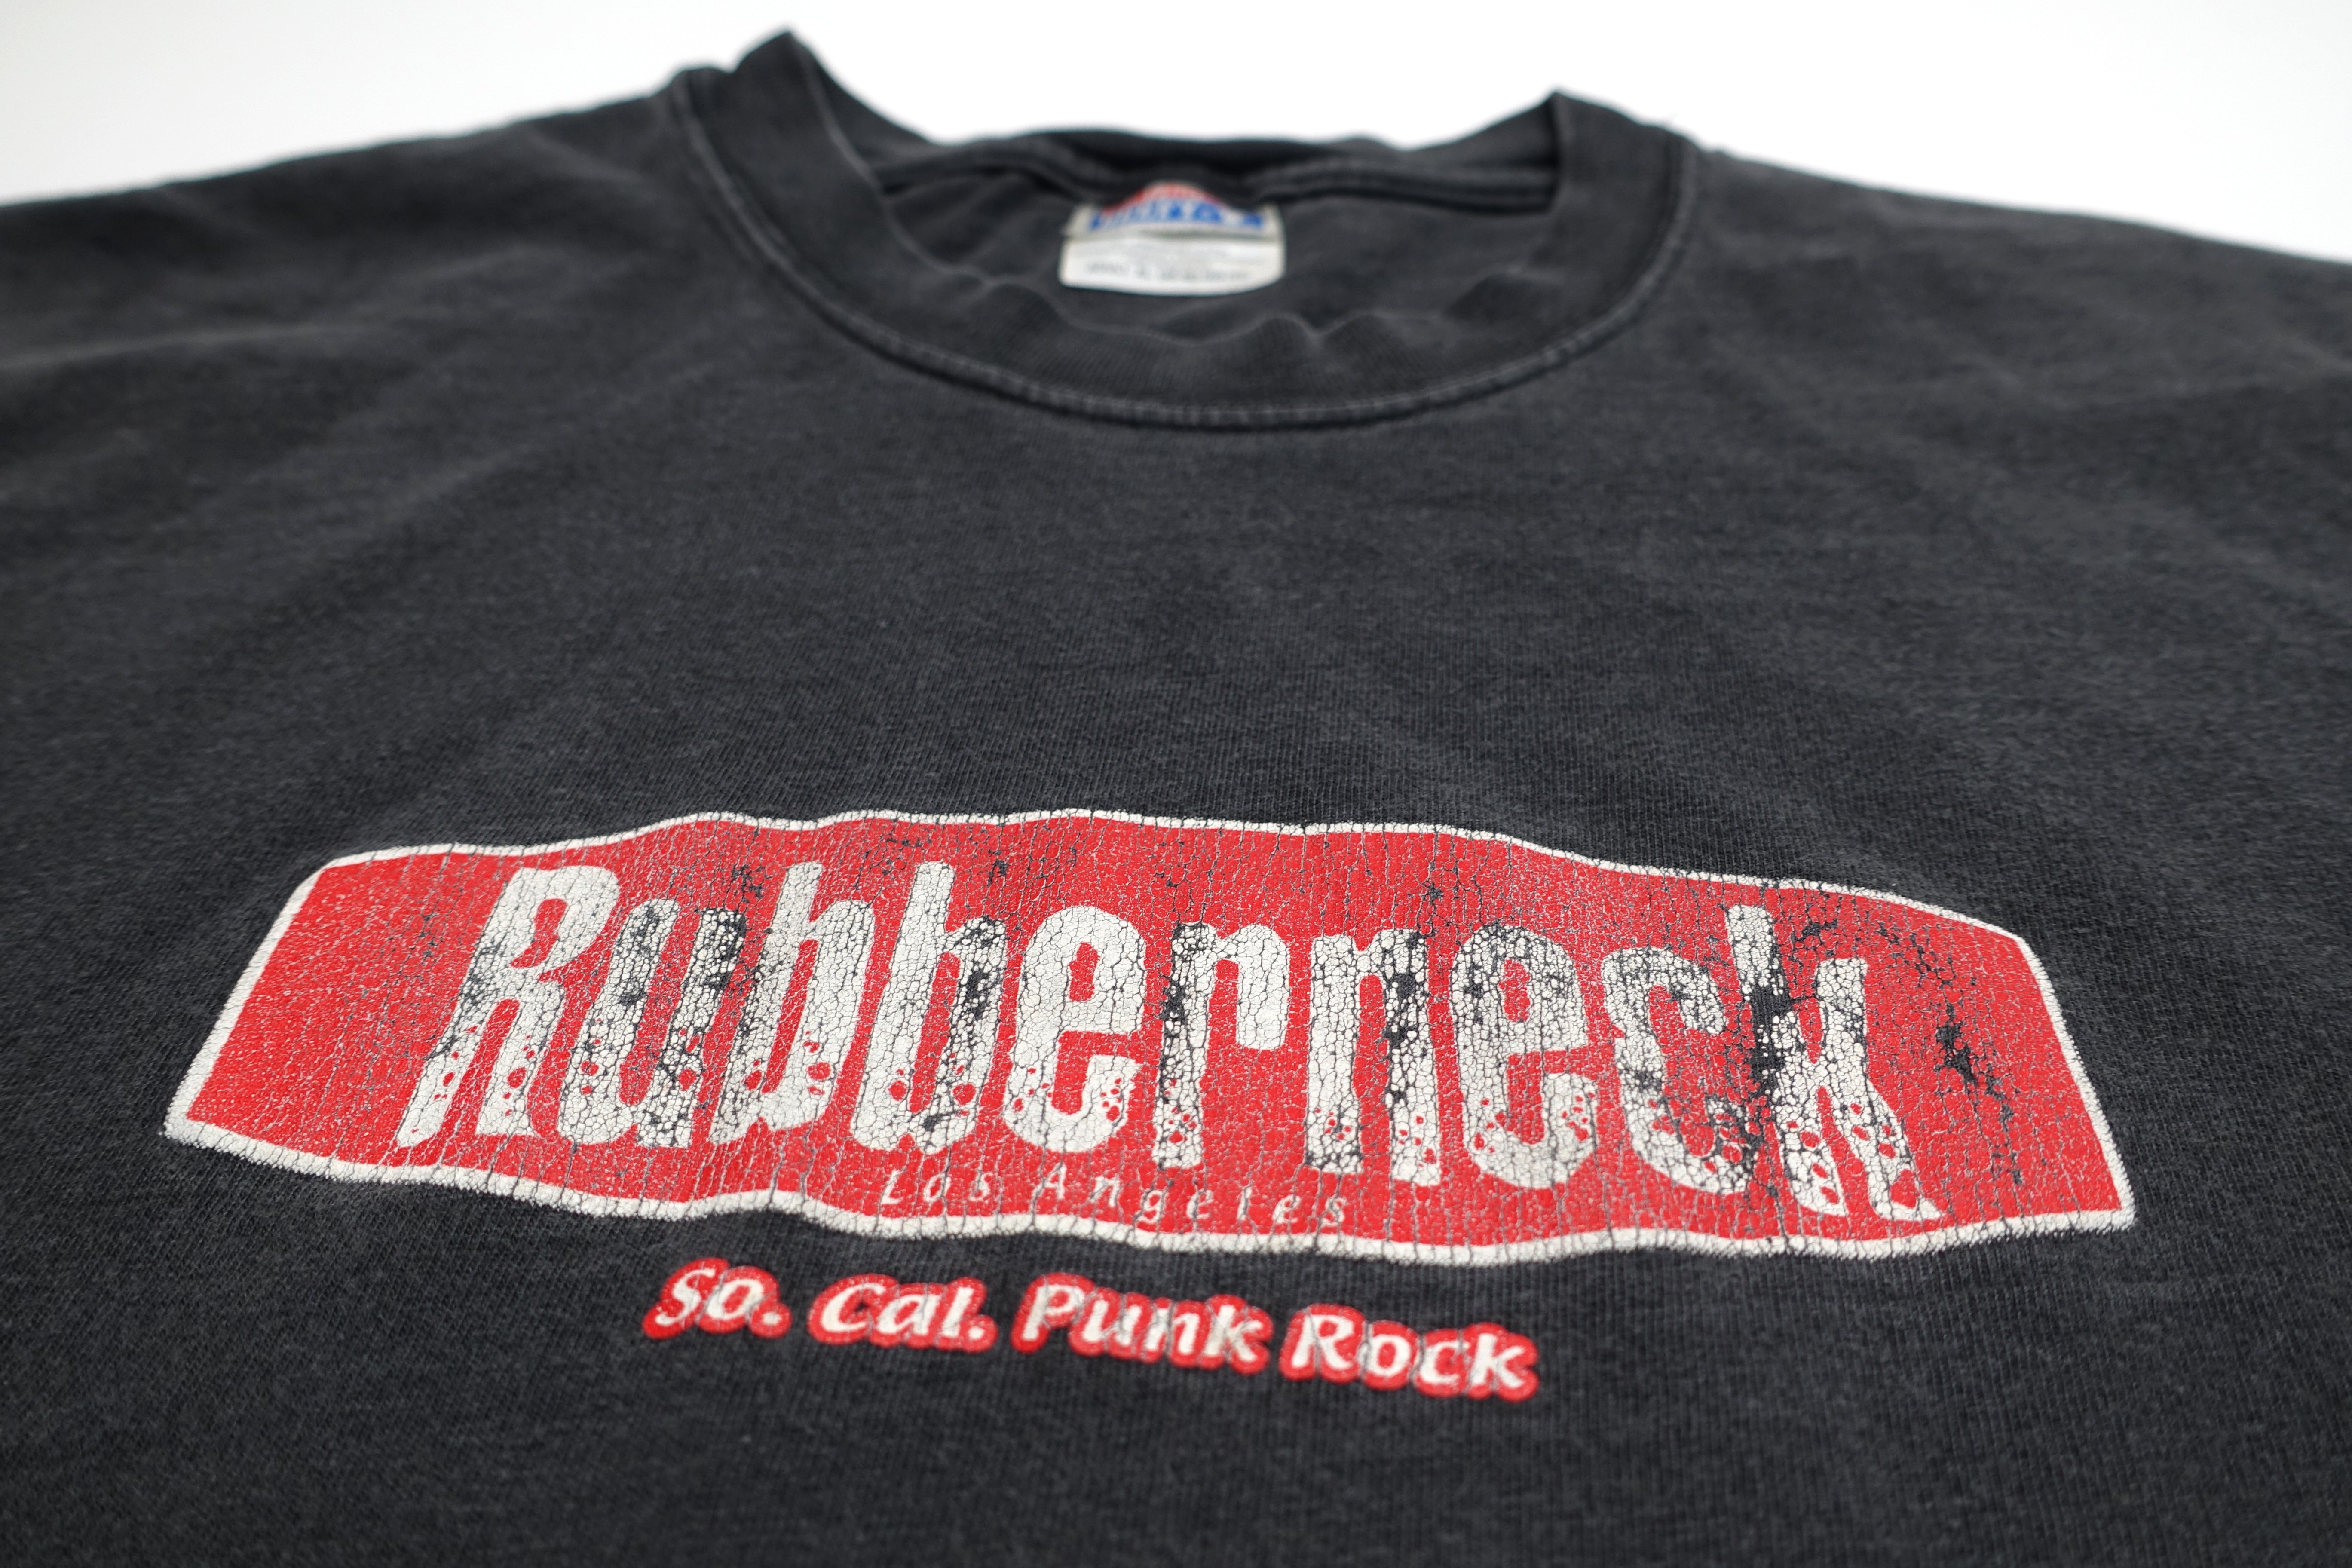 Rubberneck – Victim 1997 Tour Shirt Size XL